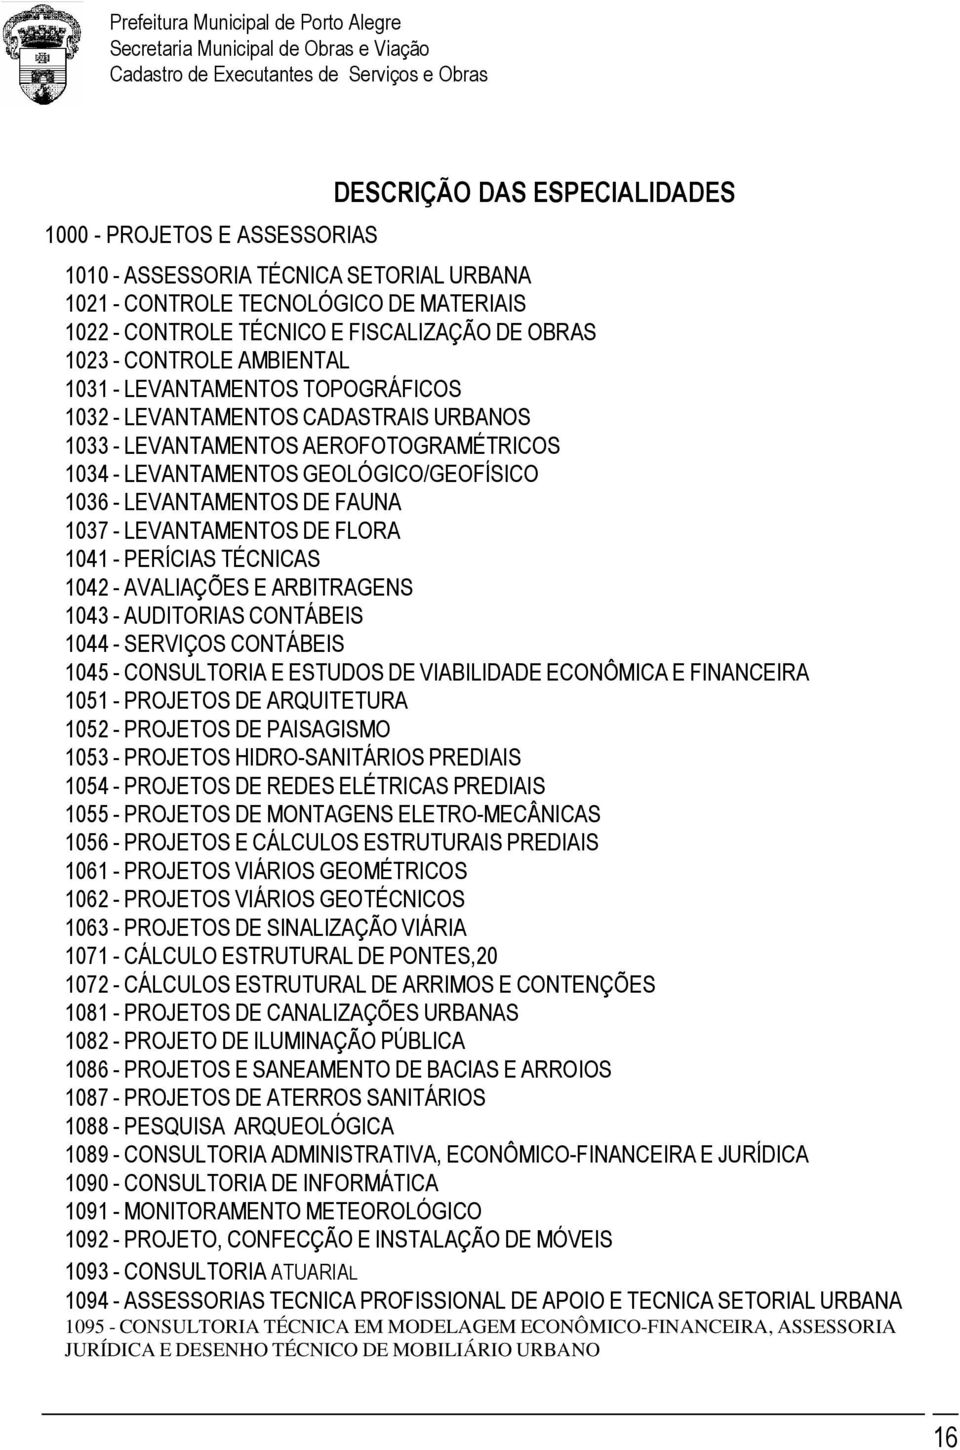 FAUNA 1037 - LEVANTAMENTOS DE FLORA 1041 - PERÍCIAS TÉCNICAS 1042 - AVALIAÇÕES E ARBITRAGENS 1043 - AUDITORIAS CONTÁBEIS 1044 - SERVIÇOS CONTÁBEIS 1045 - CONSULTORIA E ESTUDOS DE VIABILIDADE